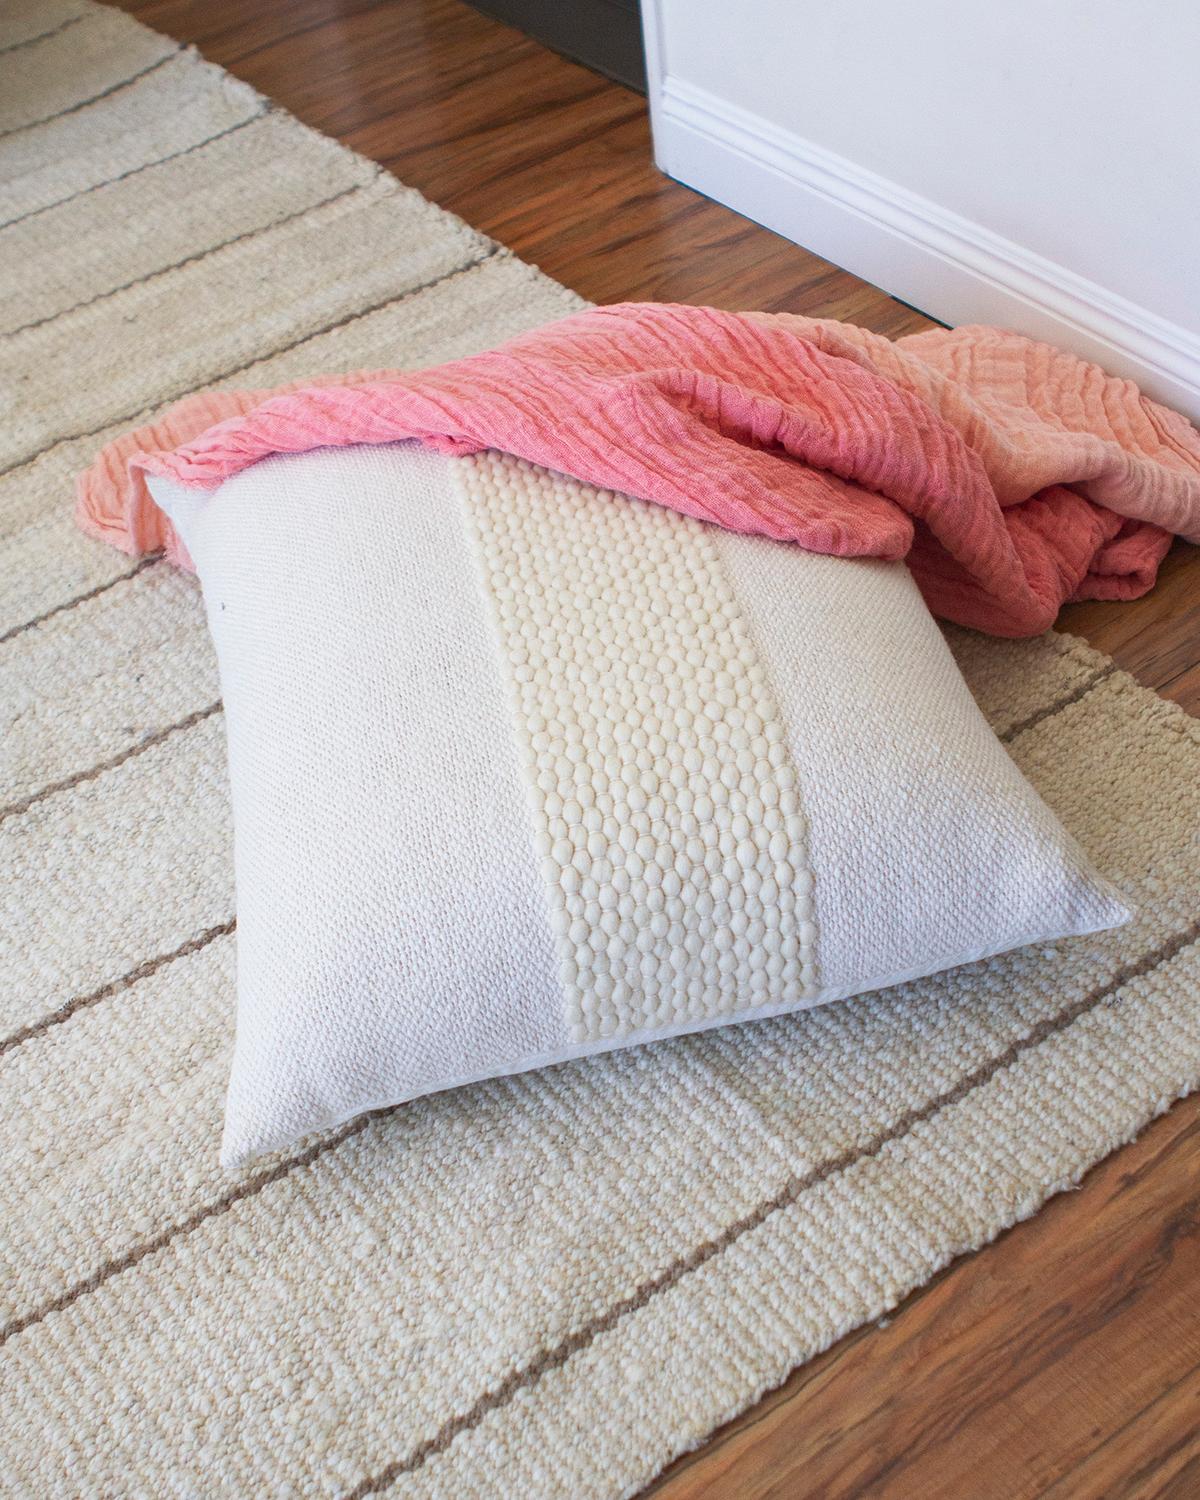 Ein strukturiertes weißes Kissen für Ihre Wohnzimmercouch. Das stilvolle Valle Kissen aus Baumwolle und Wolle ist perfekt, um jeder Einrichtung einen modernen, rustikalen Touch zu verleihen. Handgefertigt aus einer Kombination von weißer Baumwolle